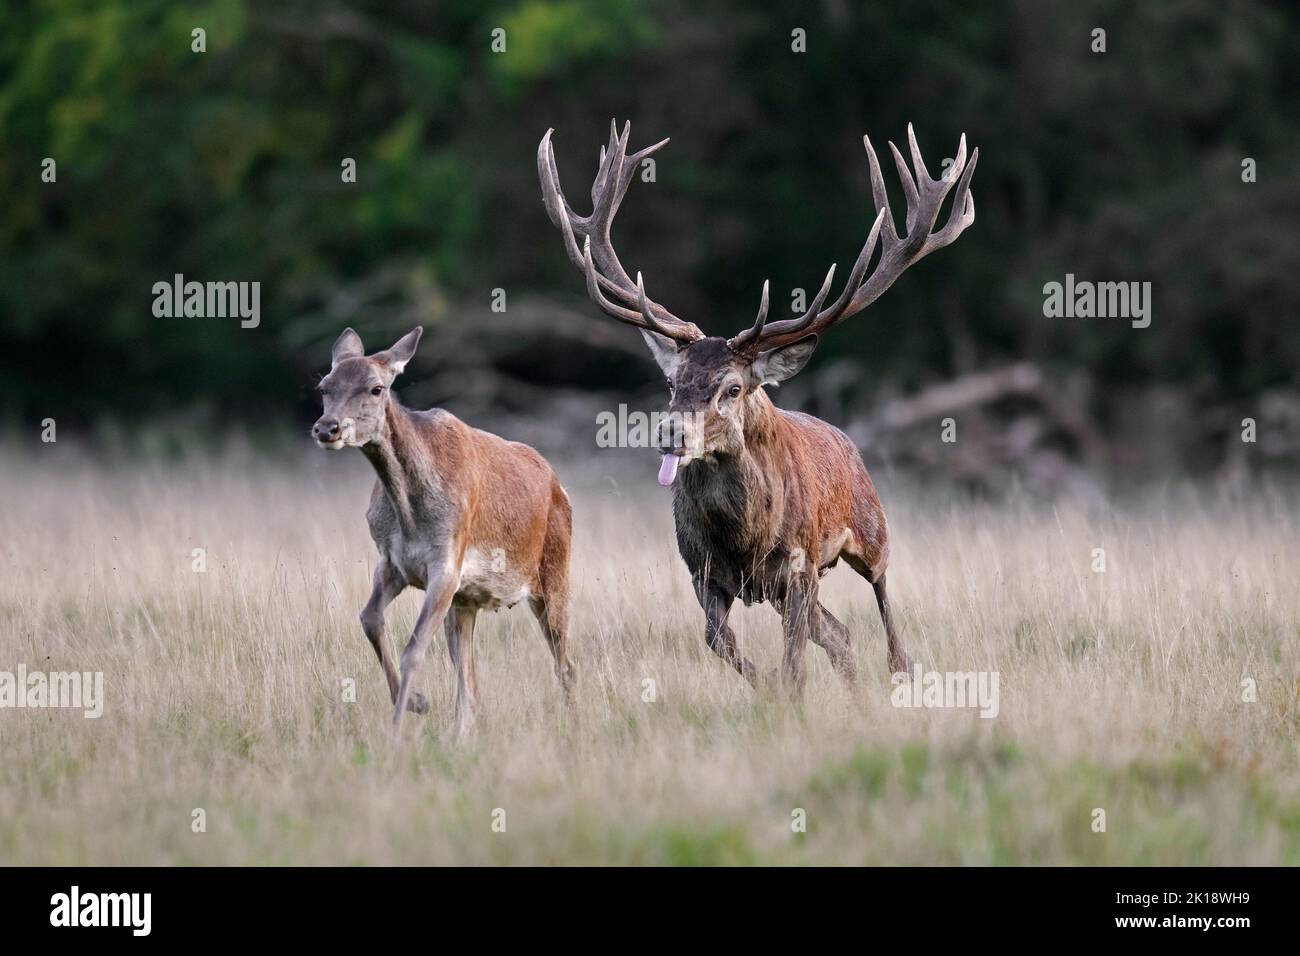 Rothirsch (Cervus elaphus) Hirsch jagen Hintern / Weibchen in der Hitze im Grasland am Waldrand während der Furche im Herbst / Herbst Stockfoto